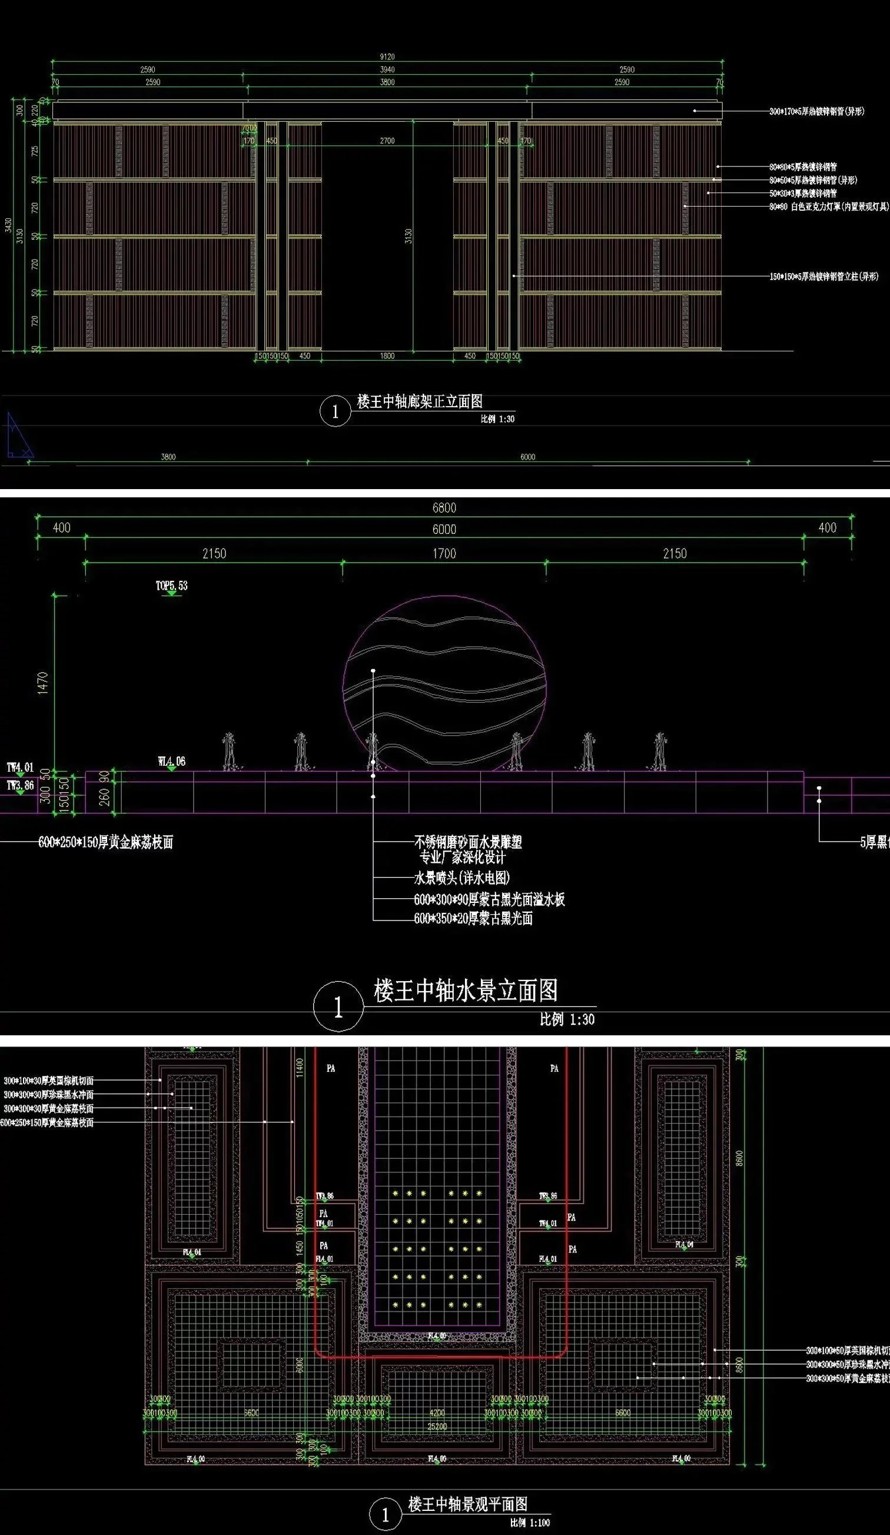 中国优秀奖项目-万科超极品豪宅-上海某精品豪宅大区景观设计方案+全套施工图+实景照片